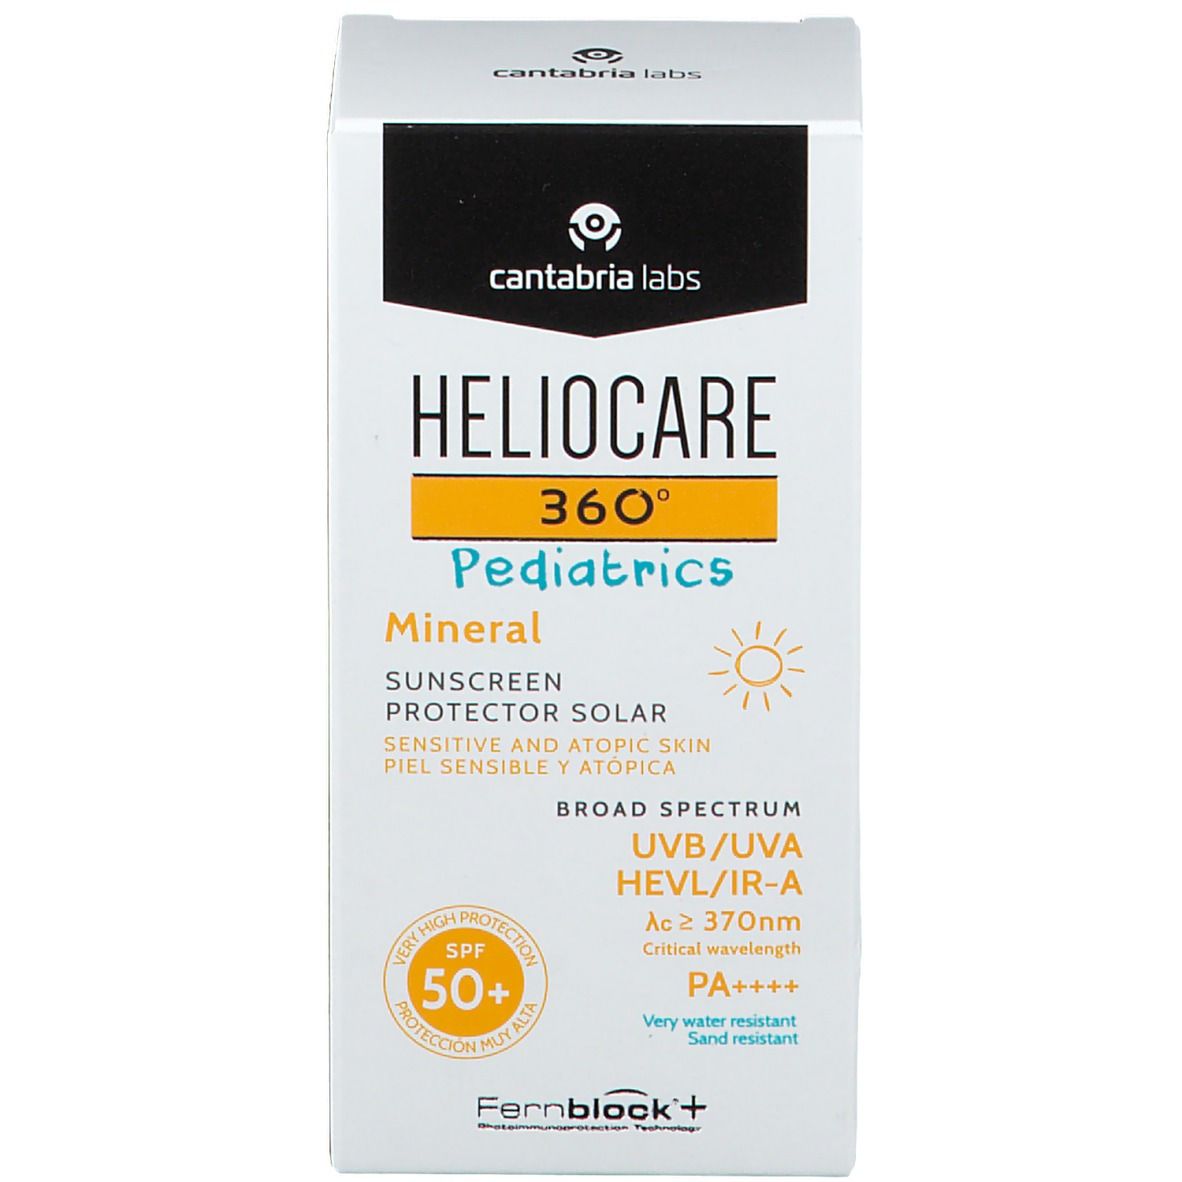 HELIOCARE 360º Pediatrics Mineral SPF 50+